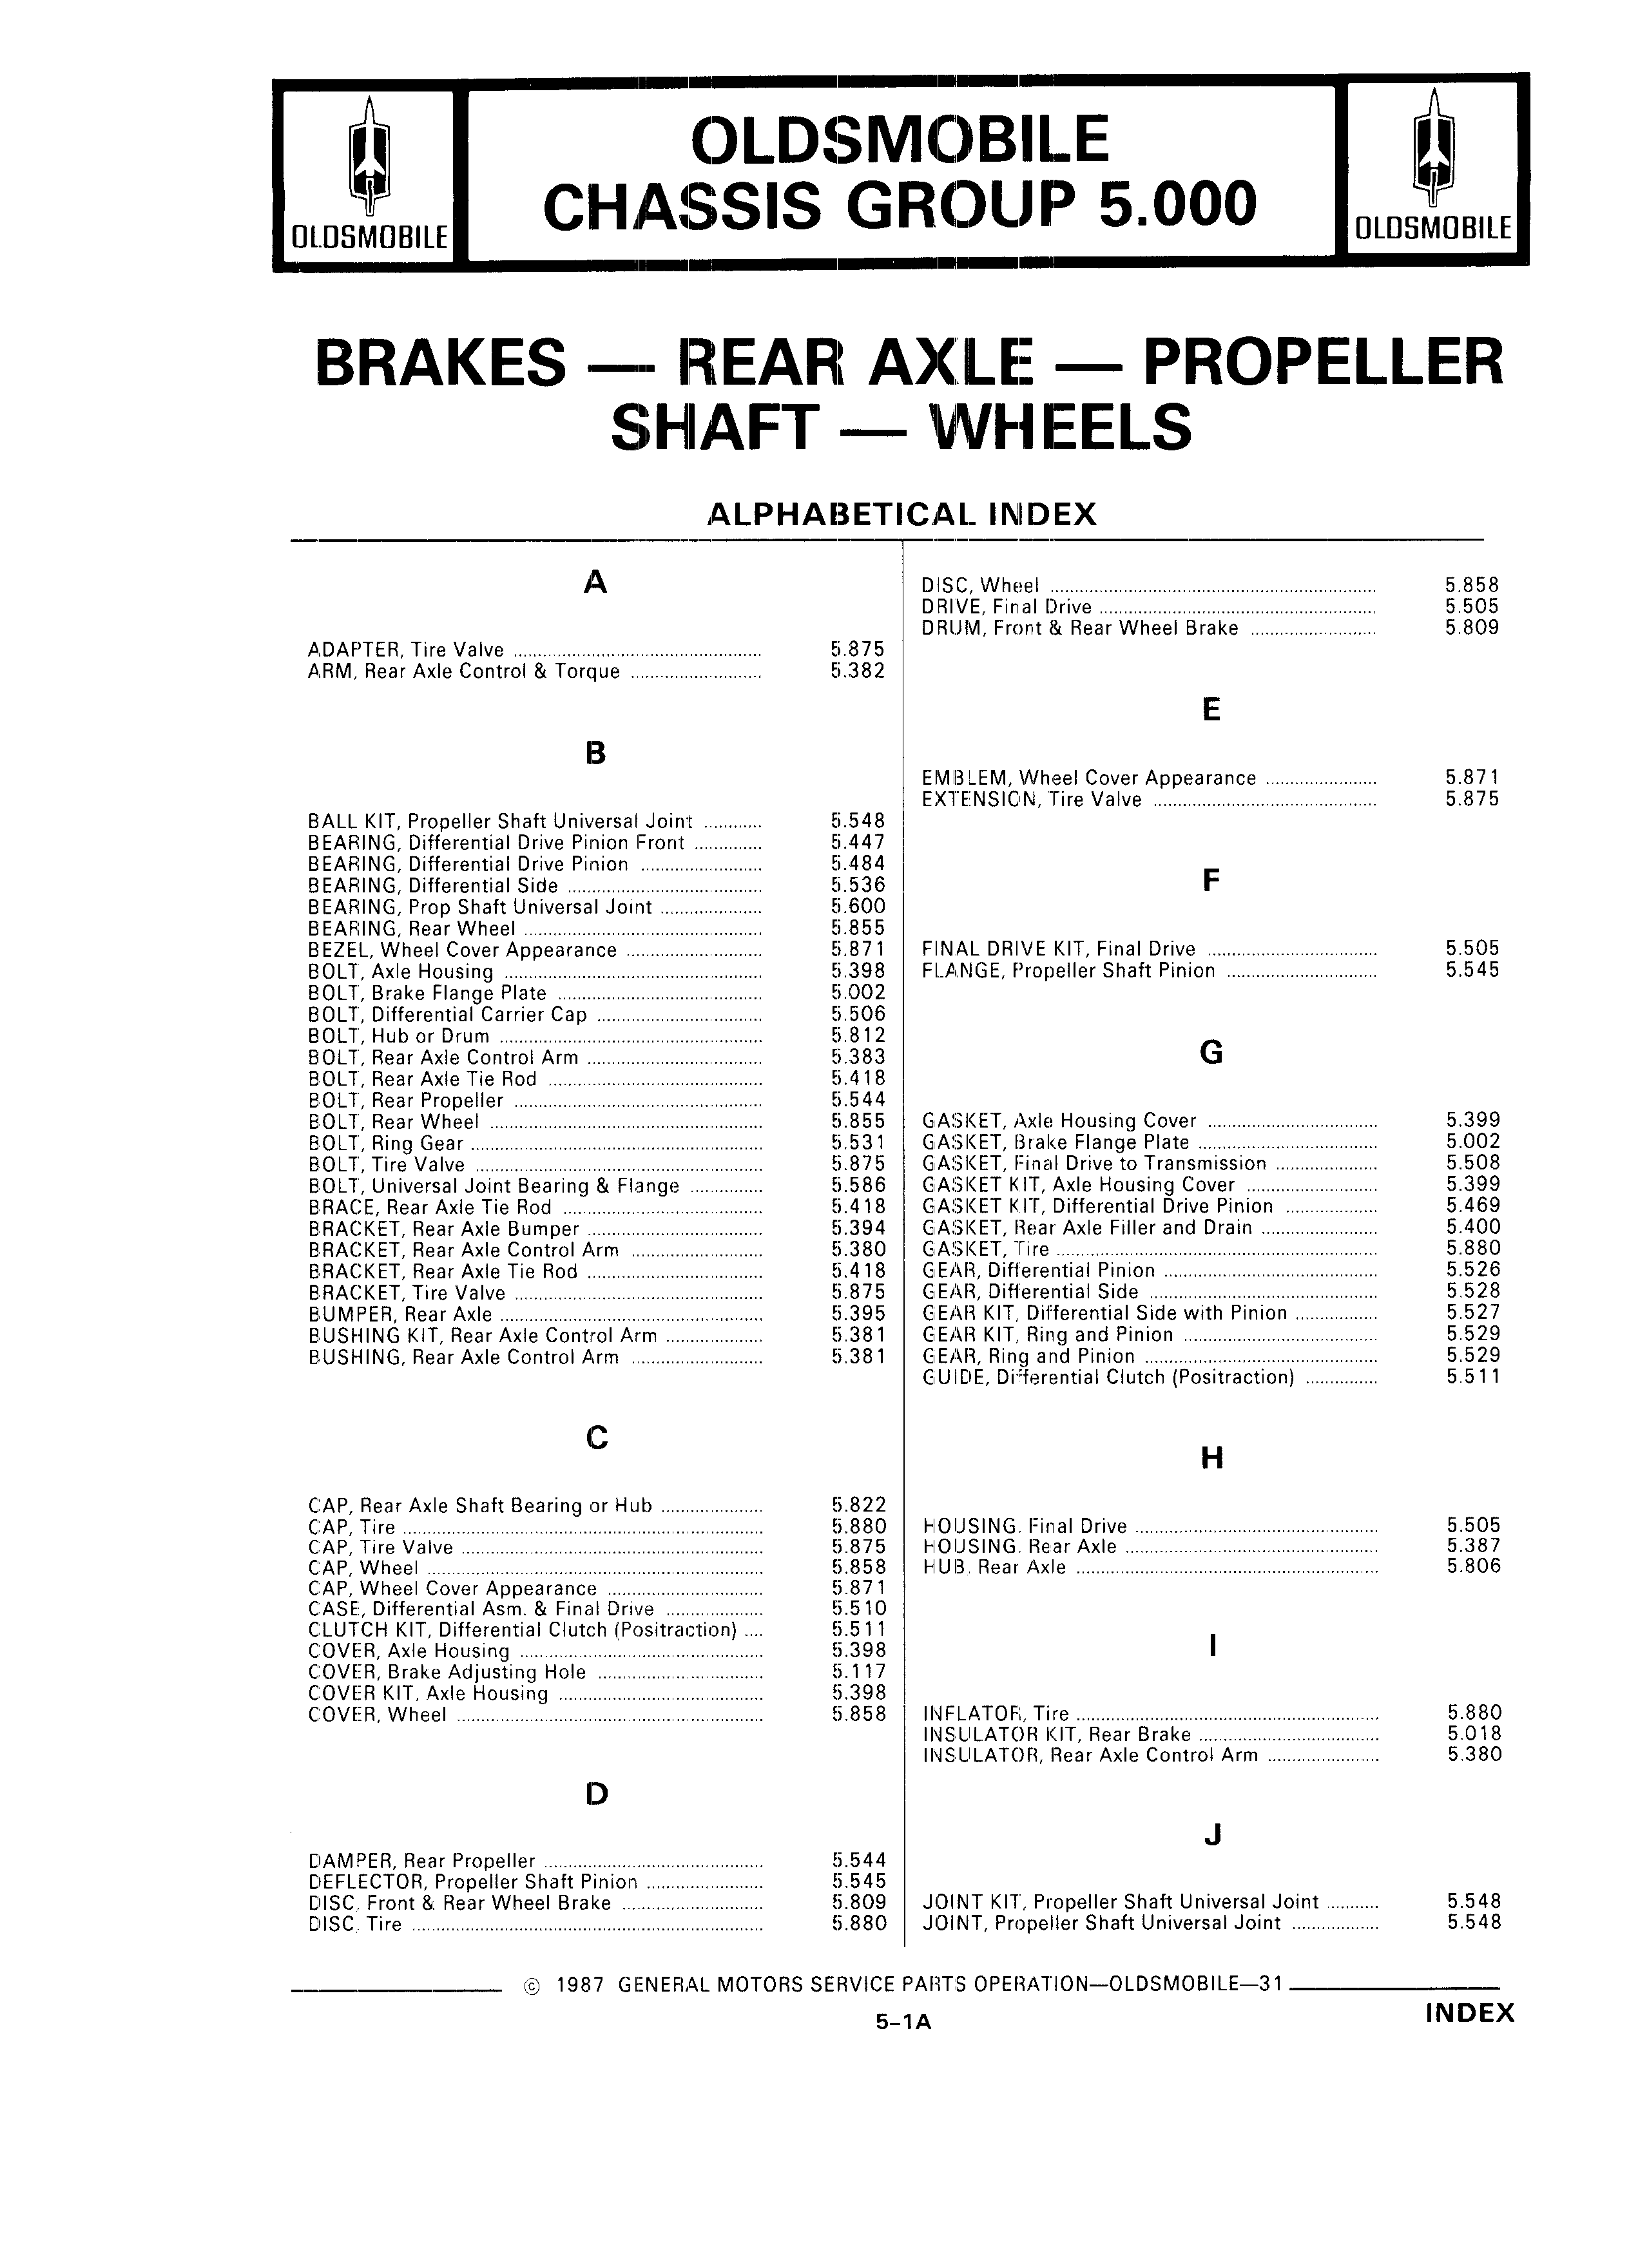 Parts Catalog 31 July 1987